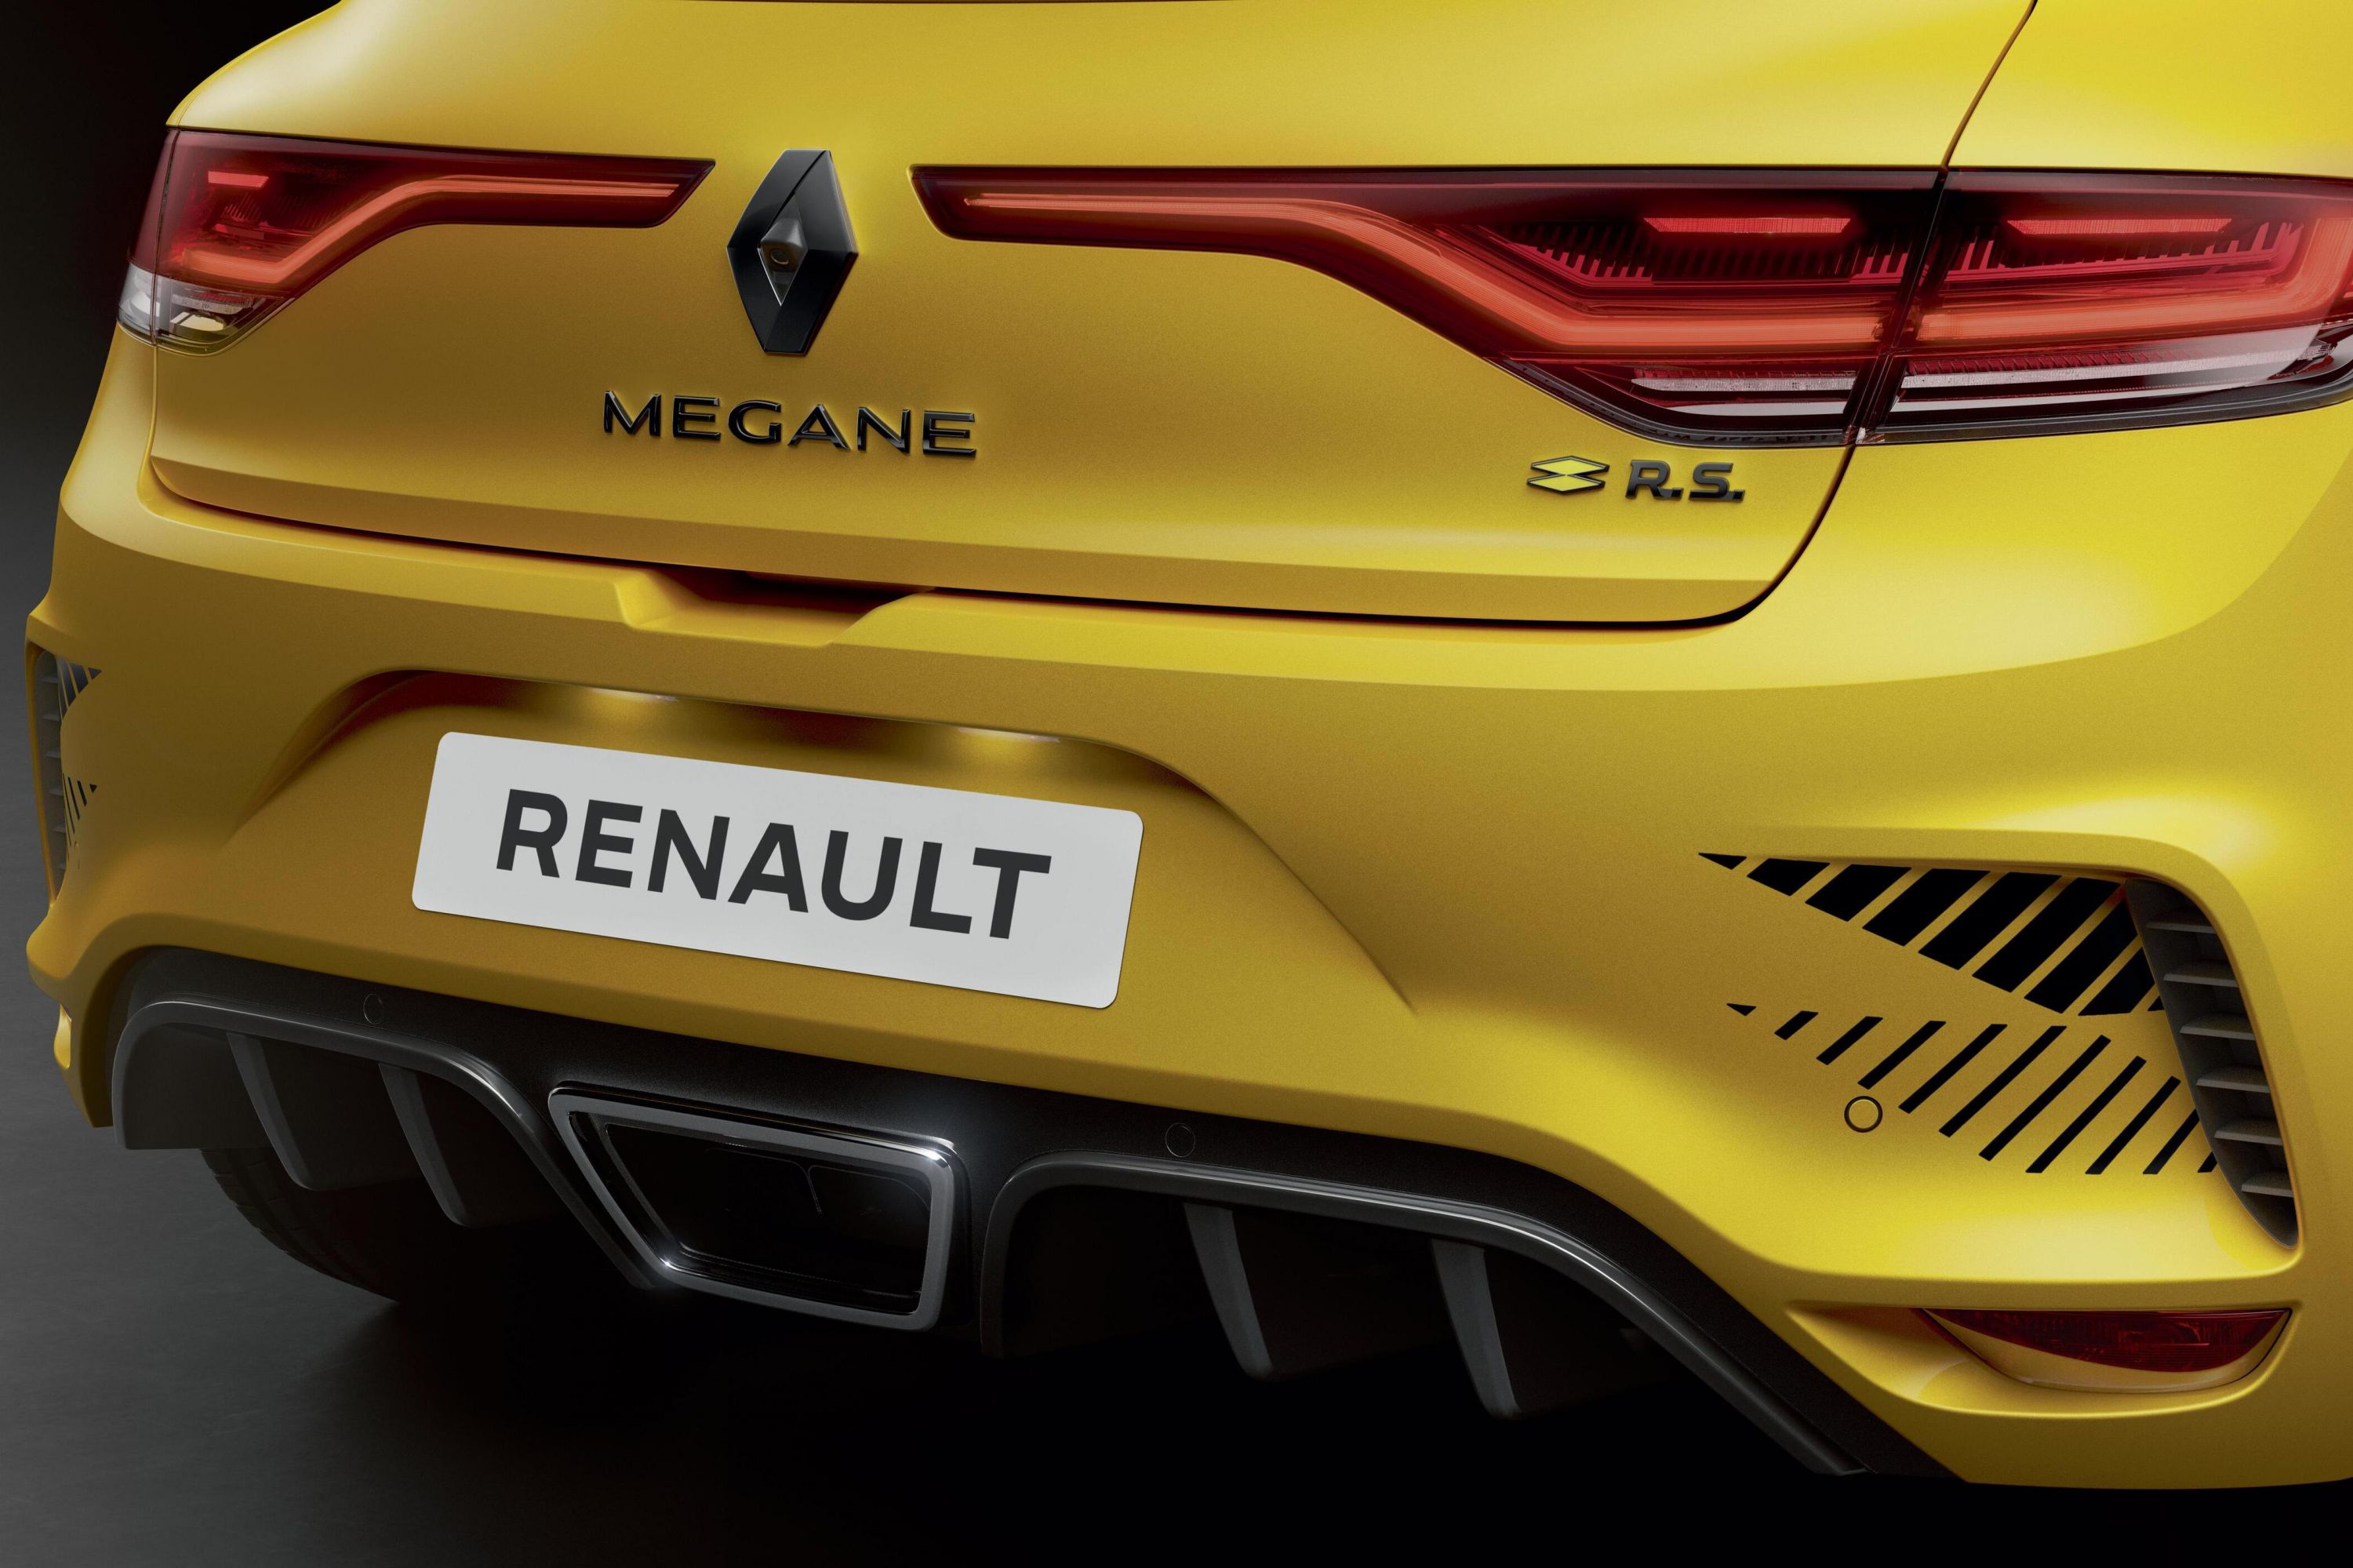 La Renault Mégane RS Ultime coûte 53 450€ (c'est cher)